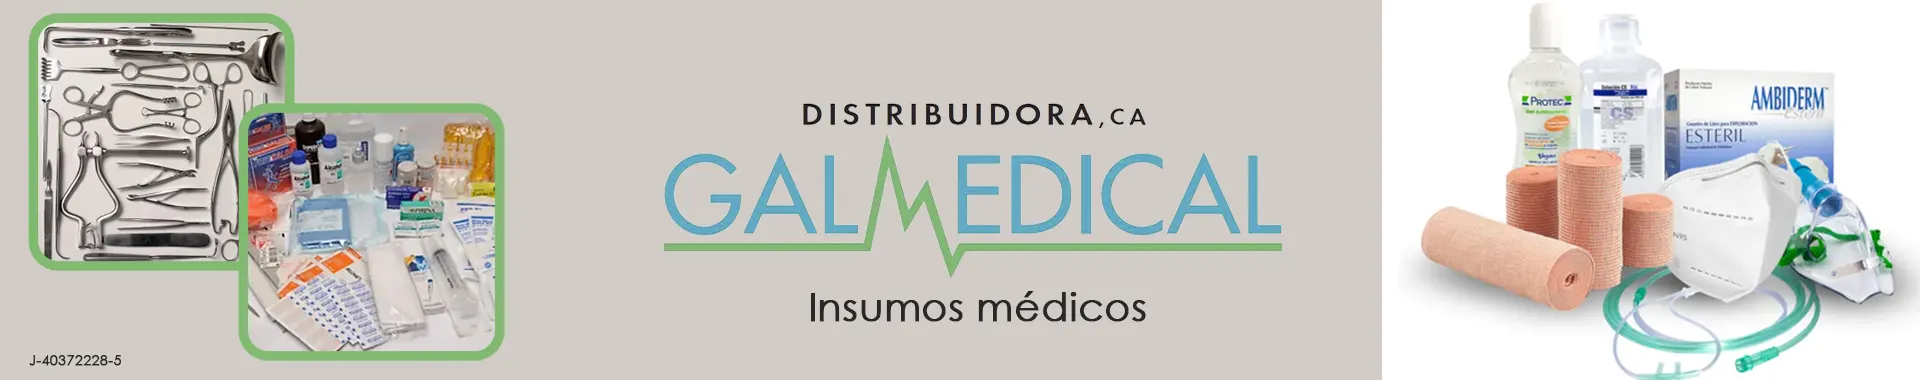 Imagen 4 del perfil de Distribuidora Galmedical